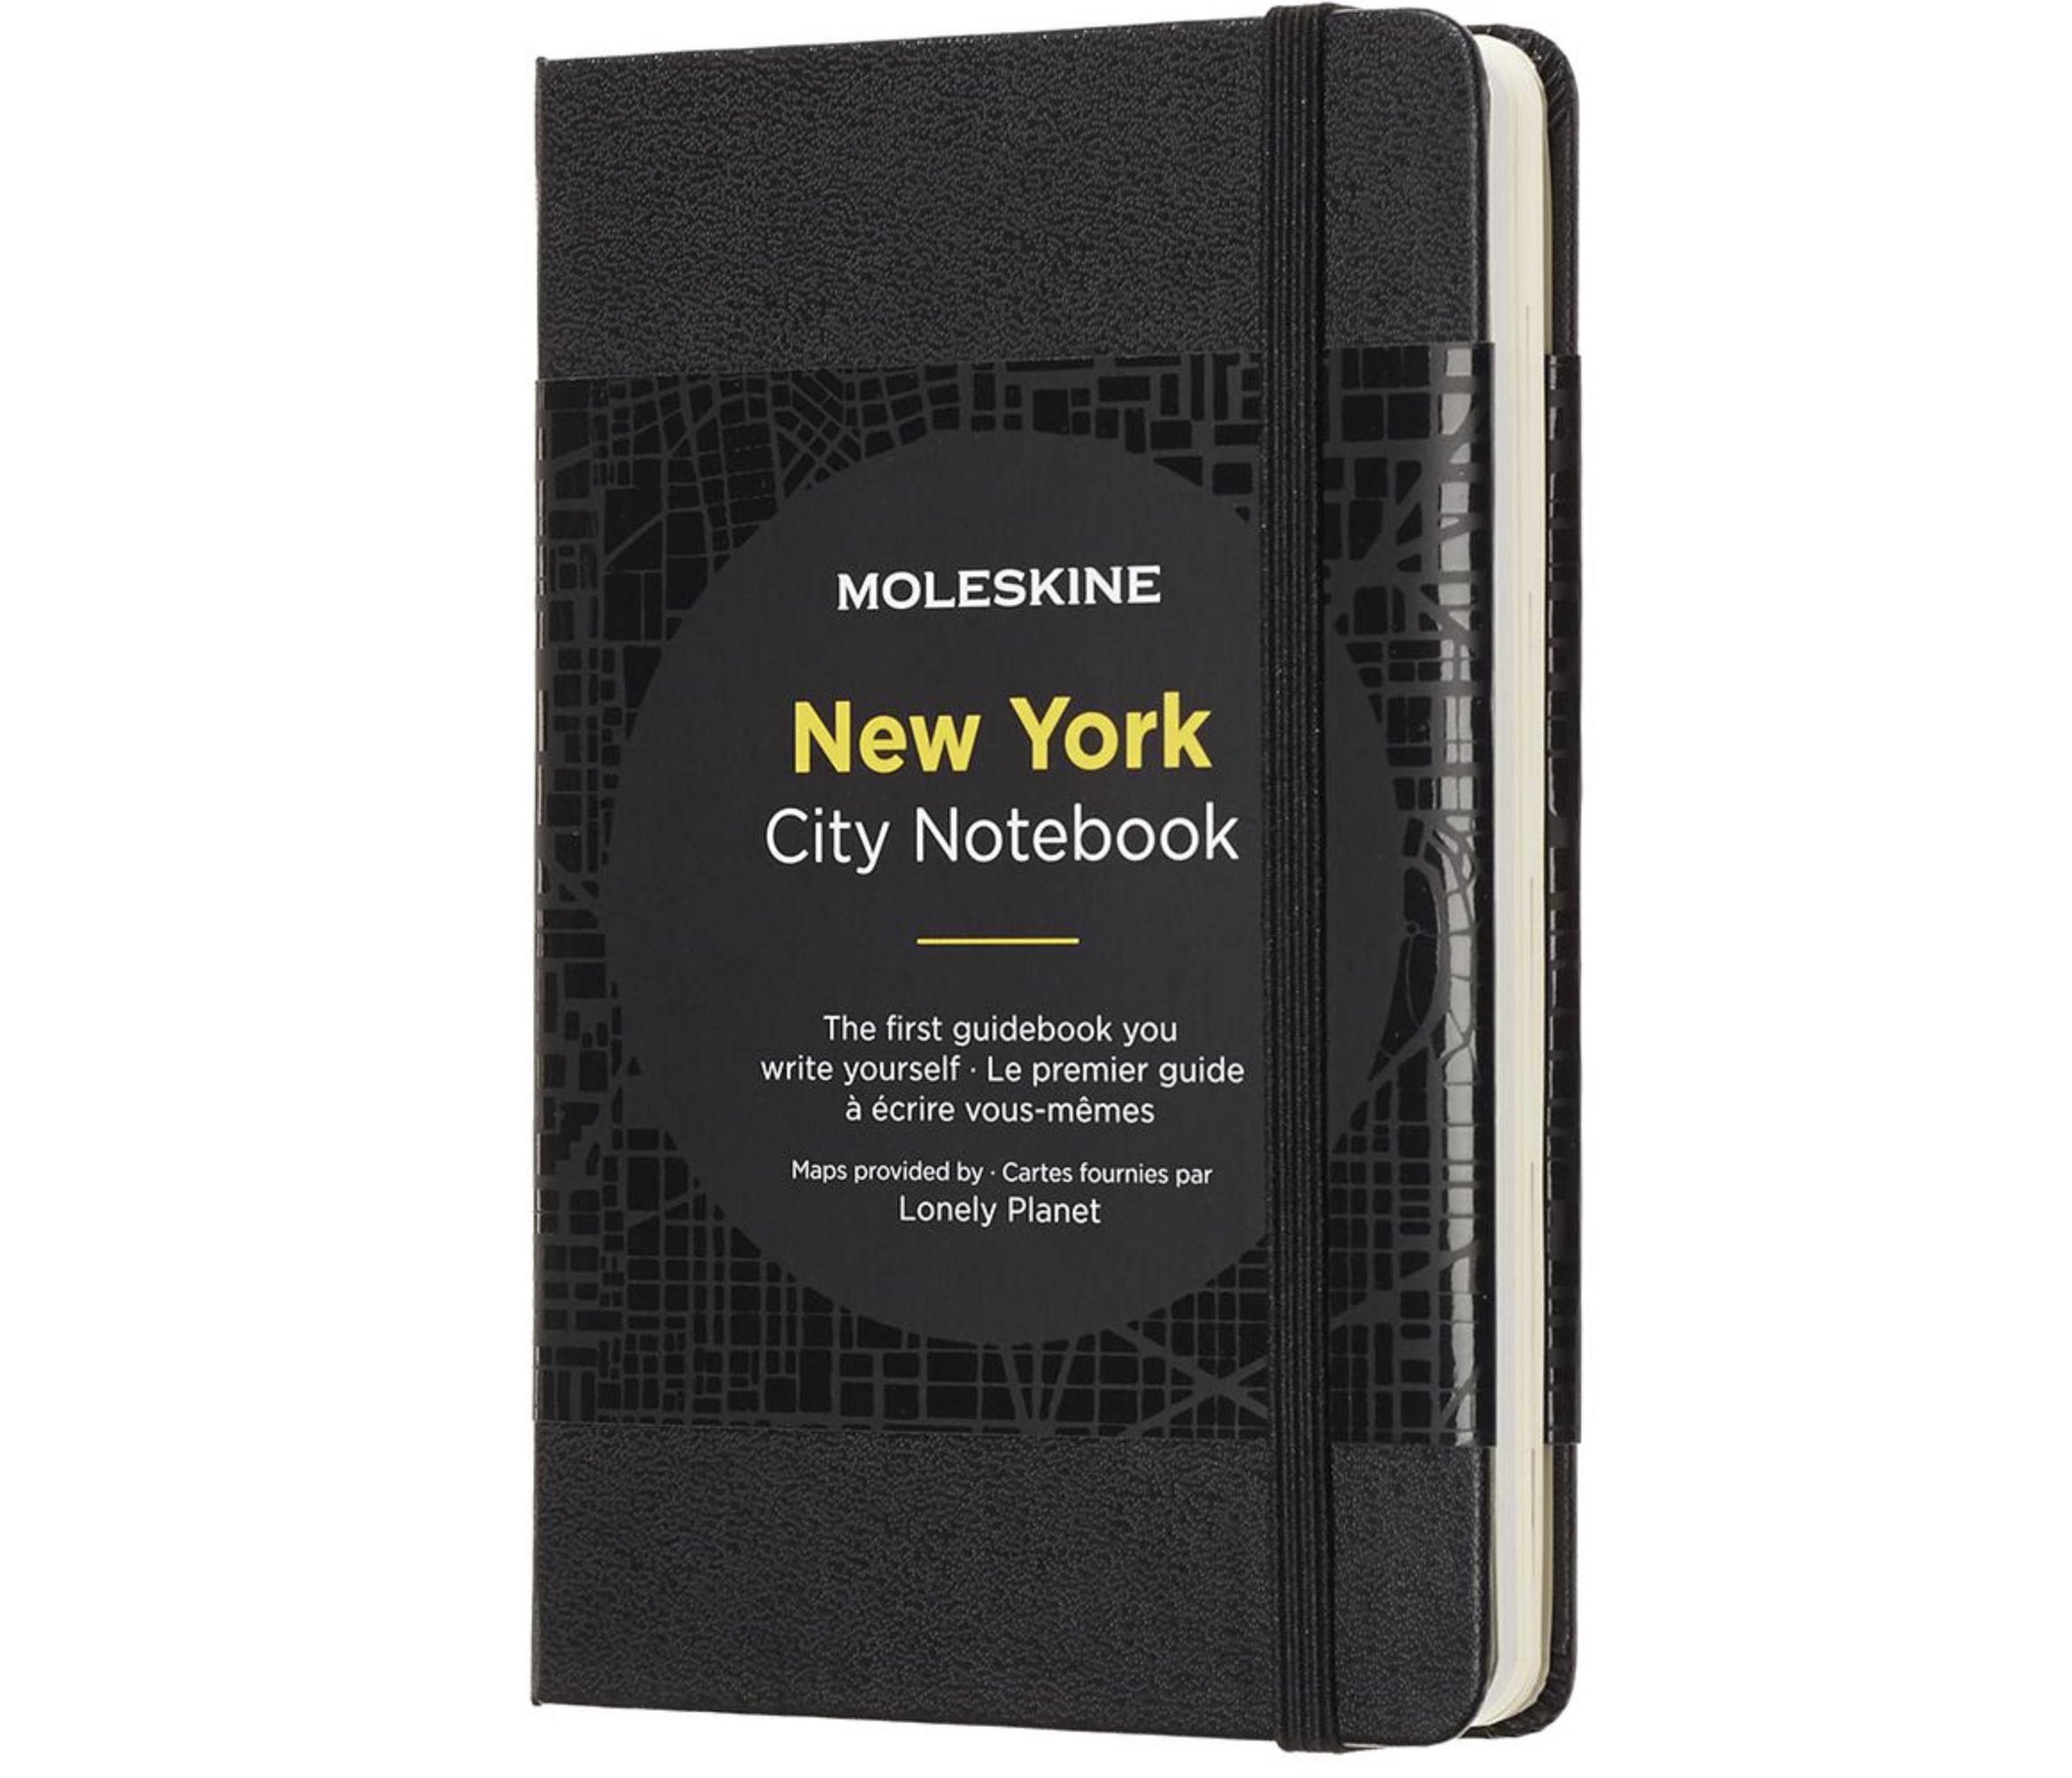 Moleskine City Notizbuch mit New York Stadtplänen für 2,40€ (statt 16€)